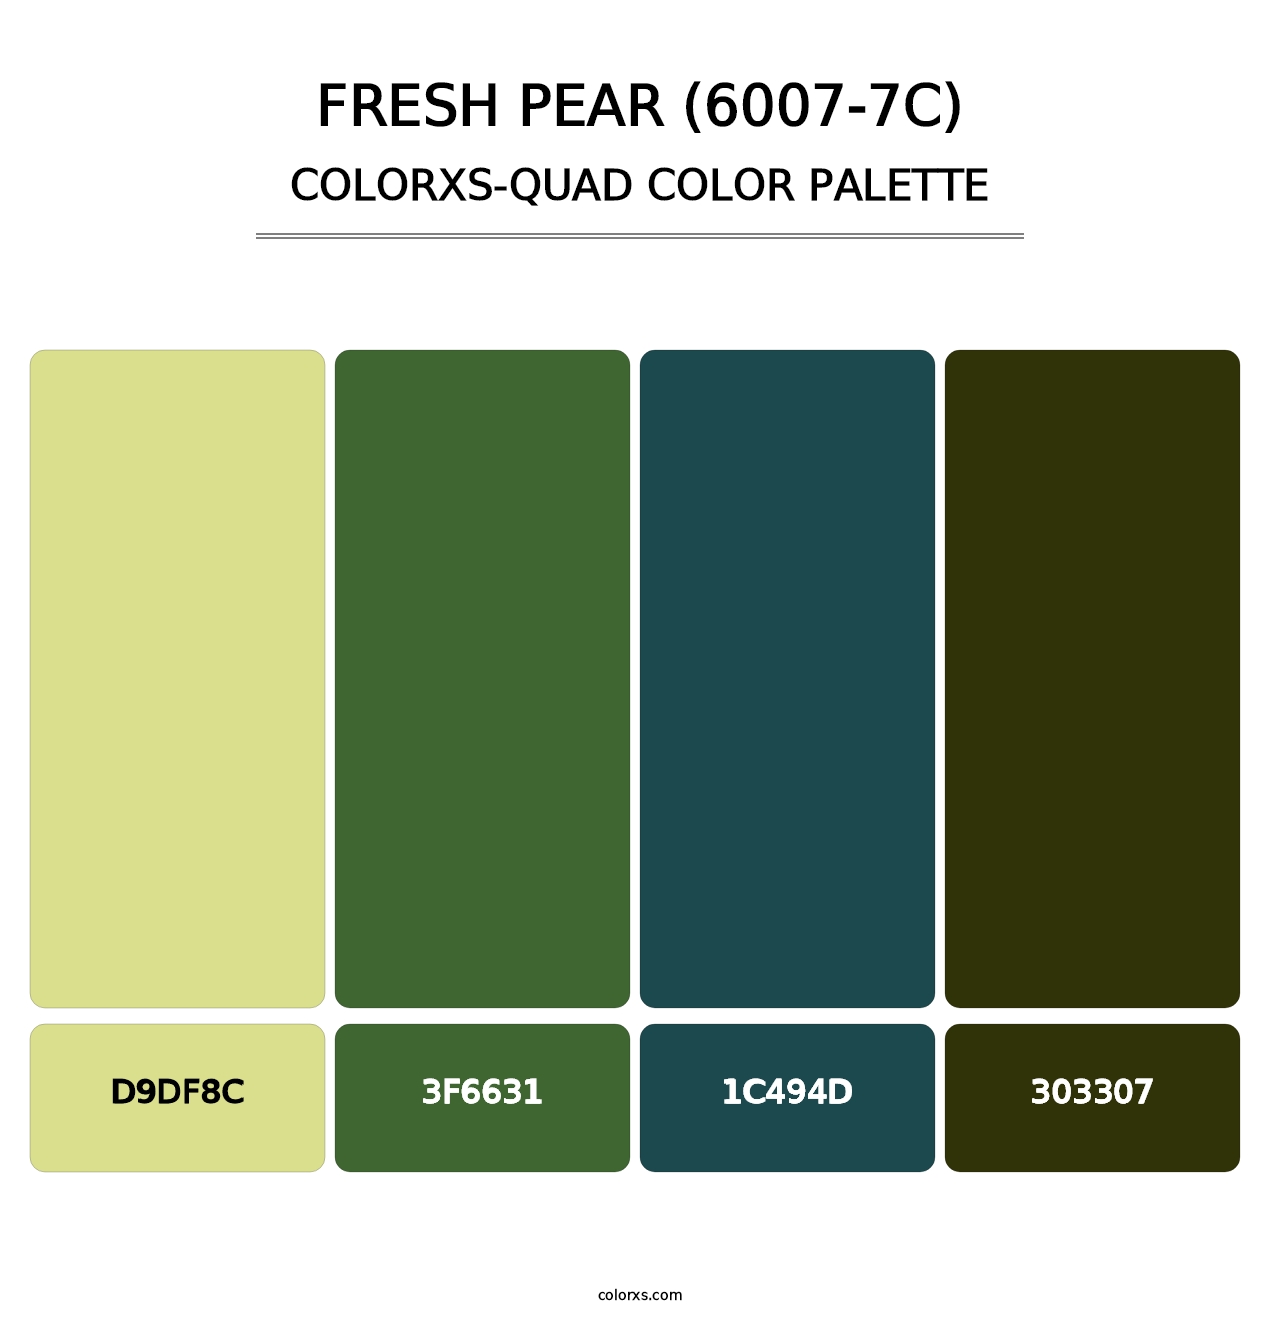 Fresh Pear (6007-7C) - Colorxs Quad Palette